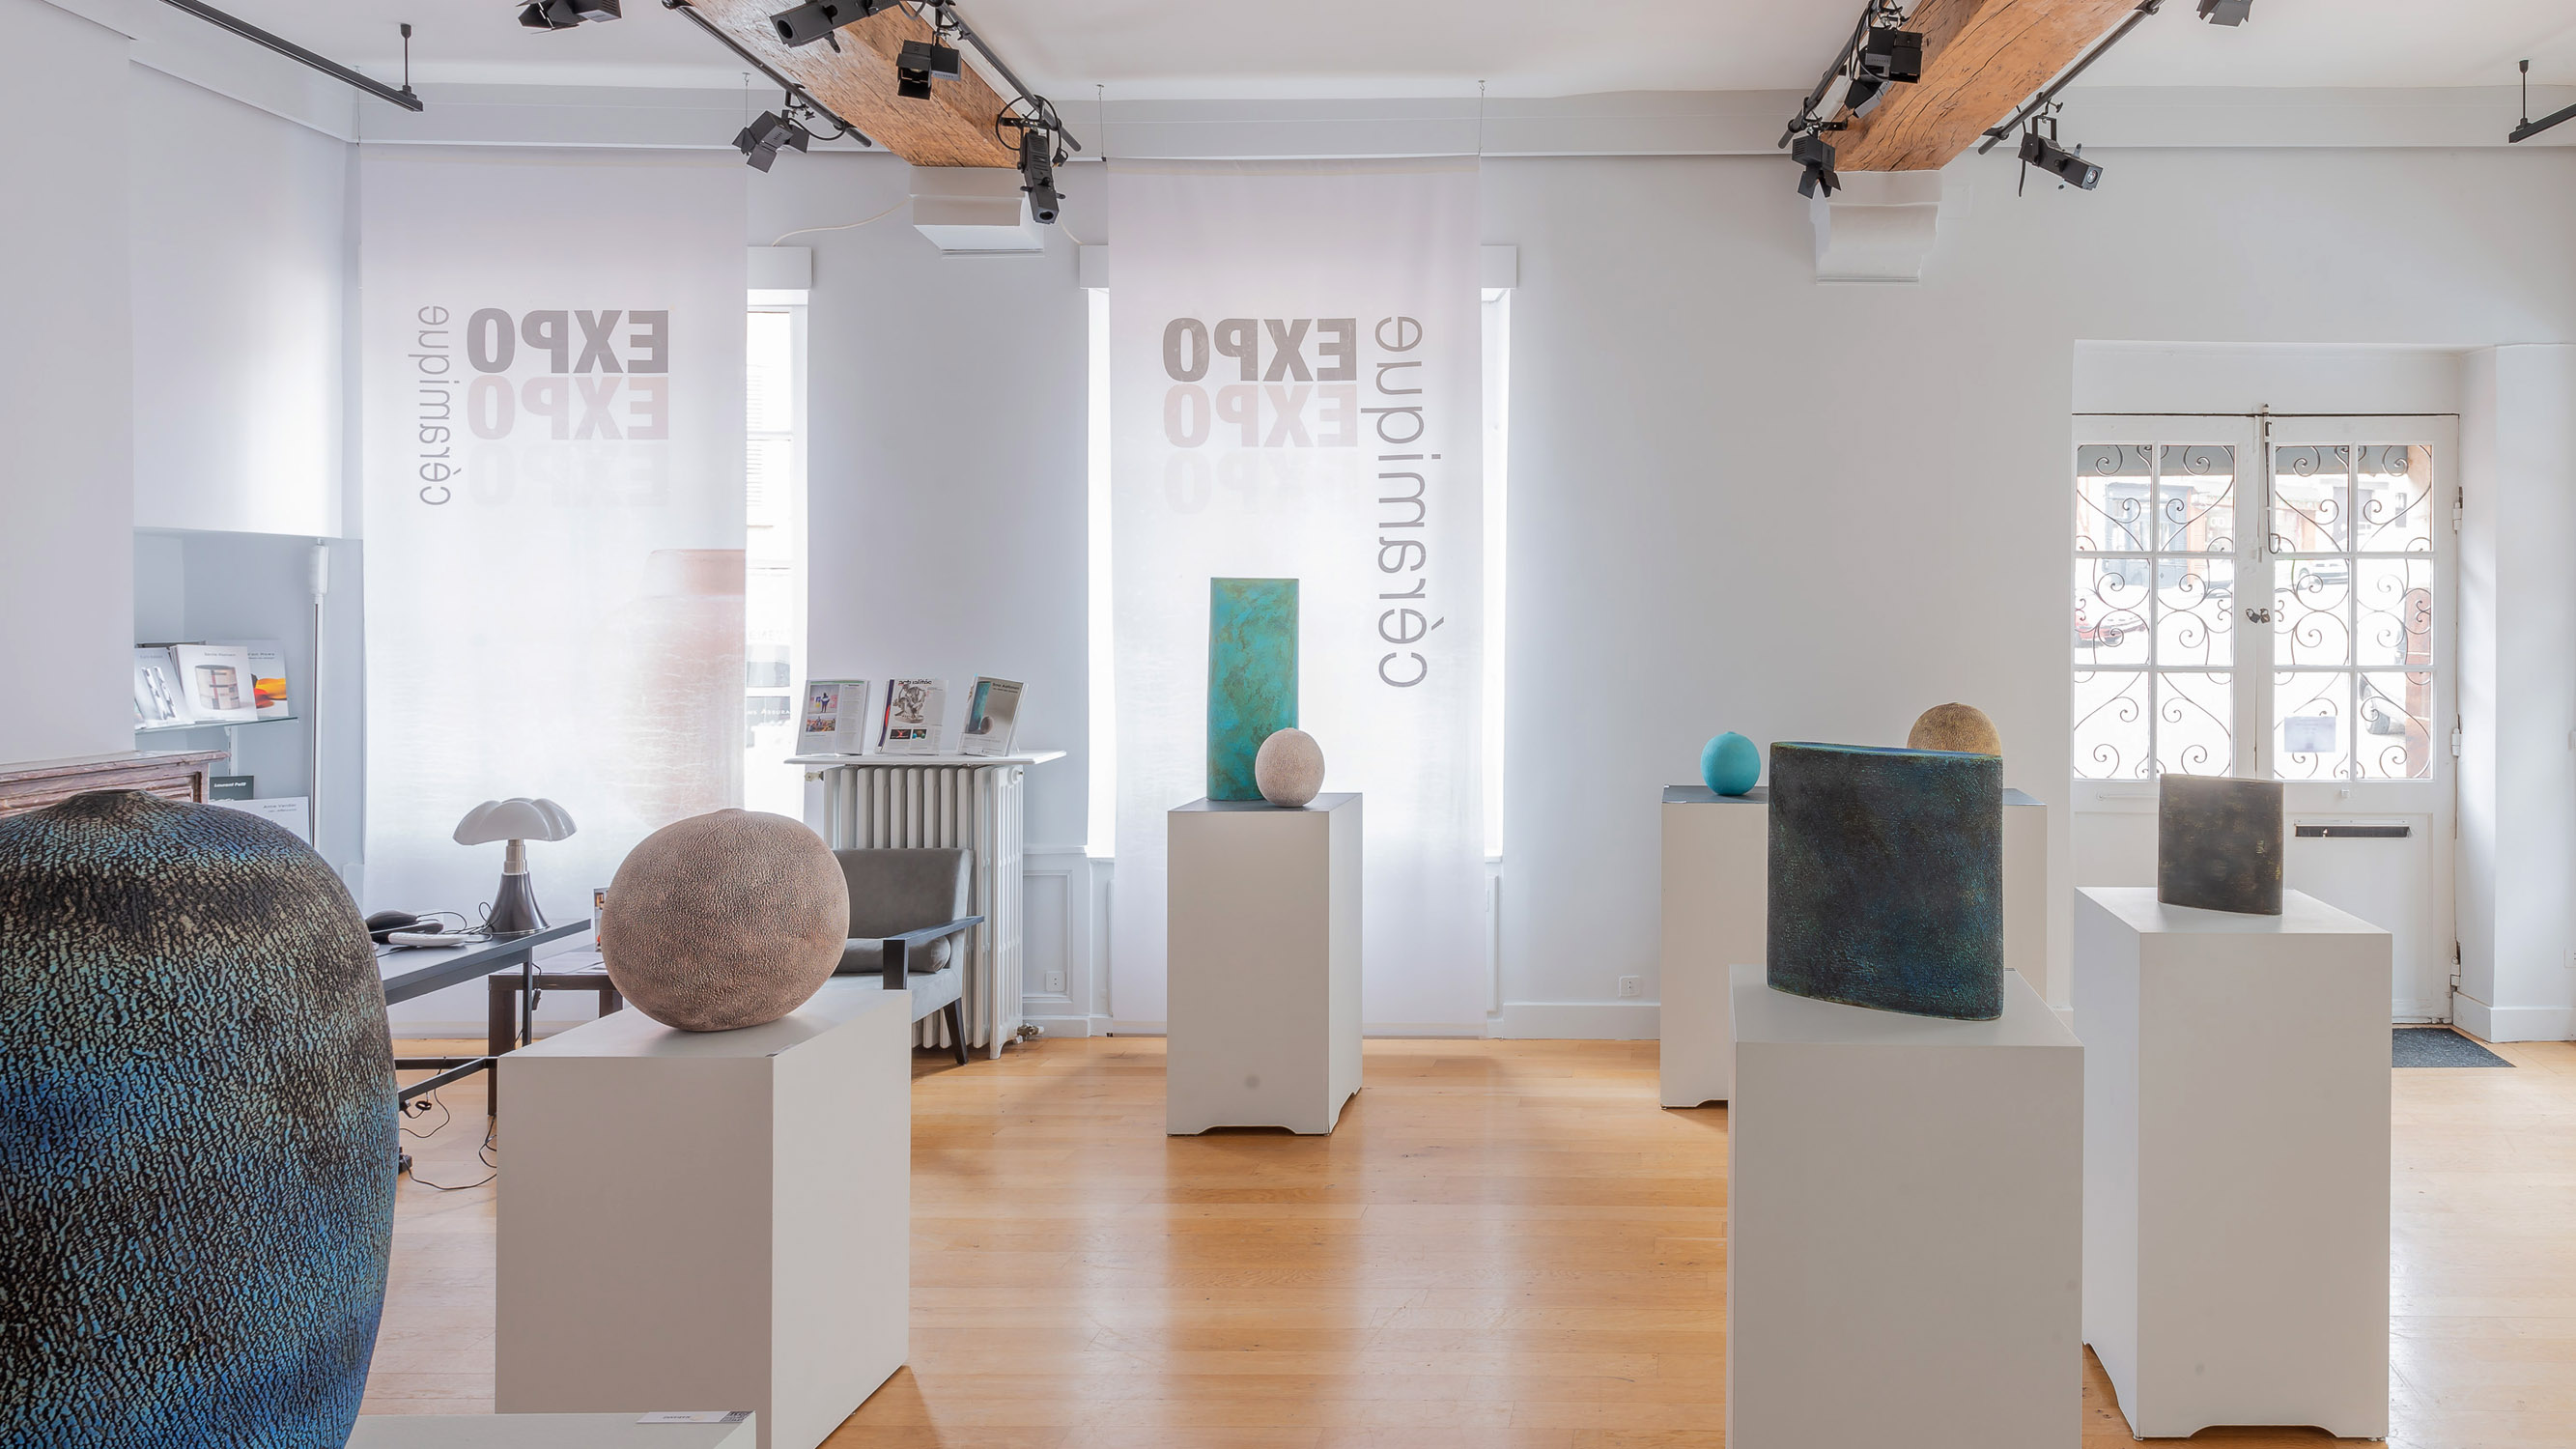 Erna Aaltonen - exposition de céramique contemporaine - vente de céramique - galerie d'art céramique - galerie de Toucy